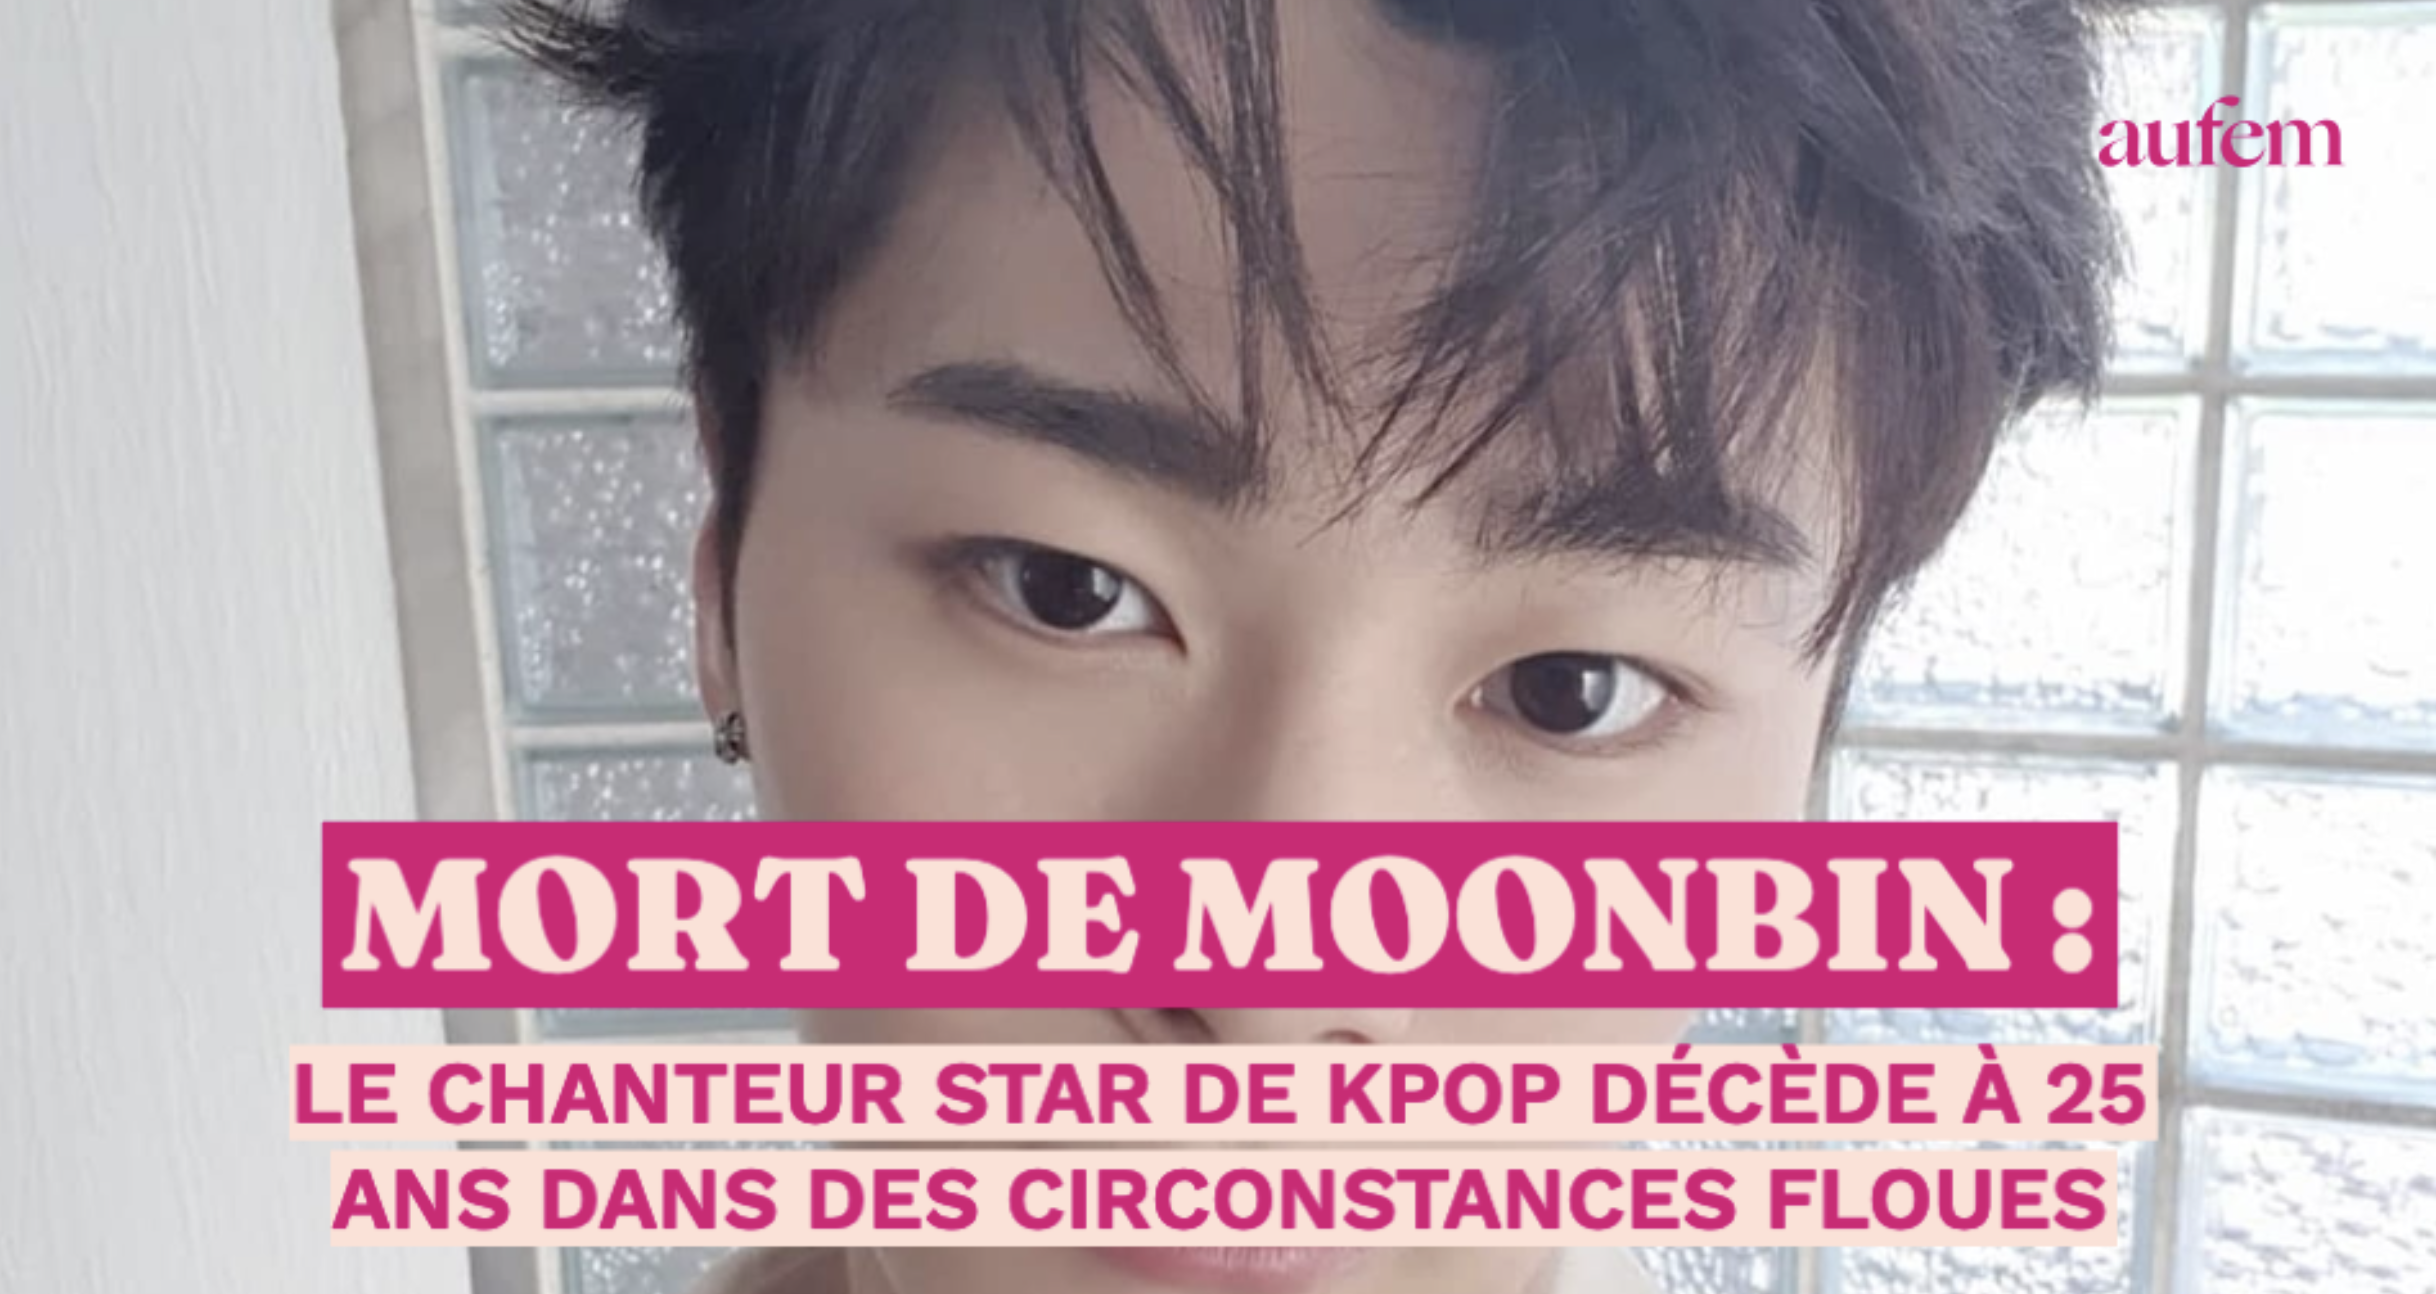 Moonbin, star sud-coréenne de la K-pop, est décédé à 25 ans